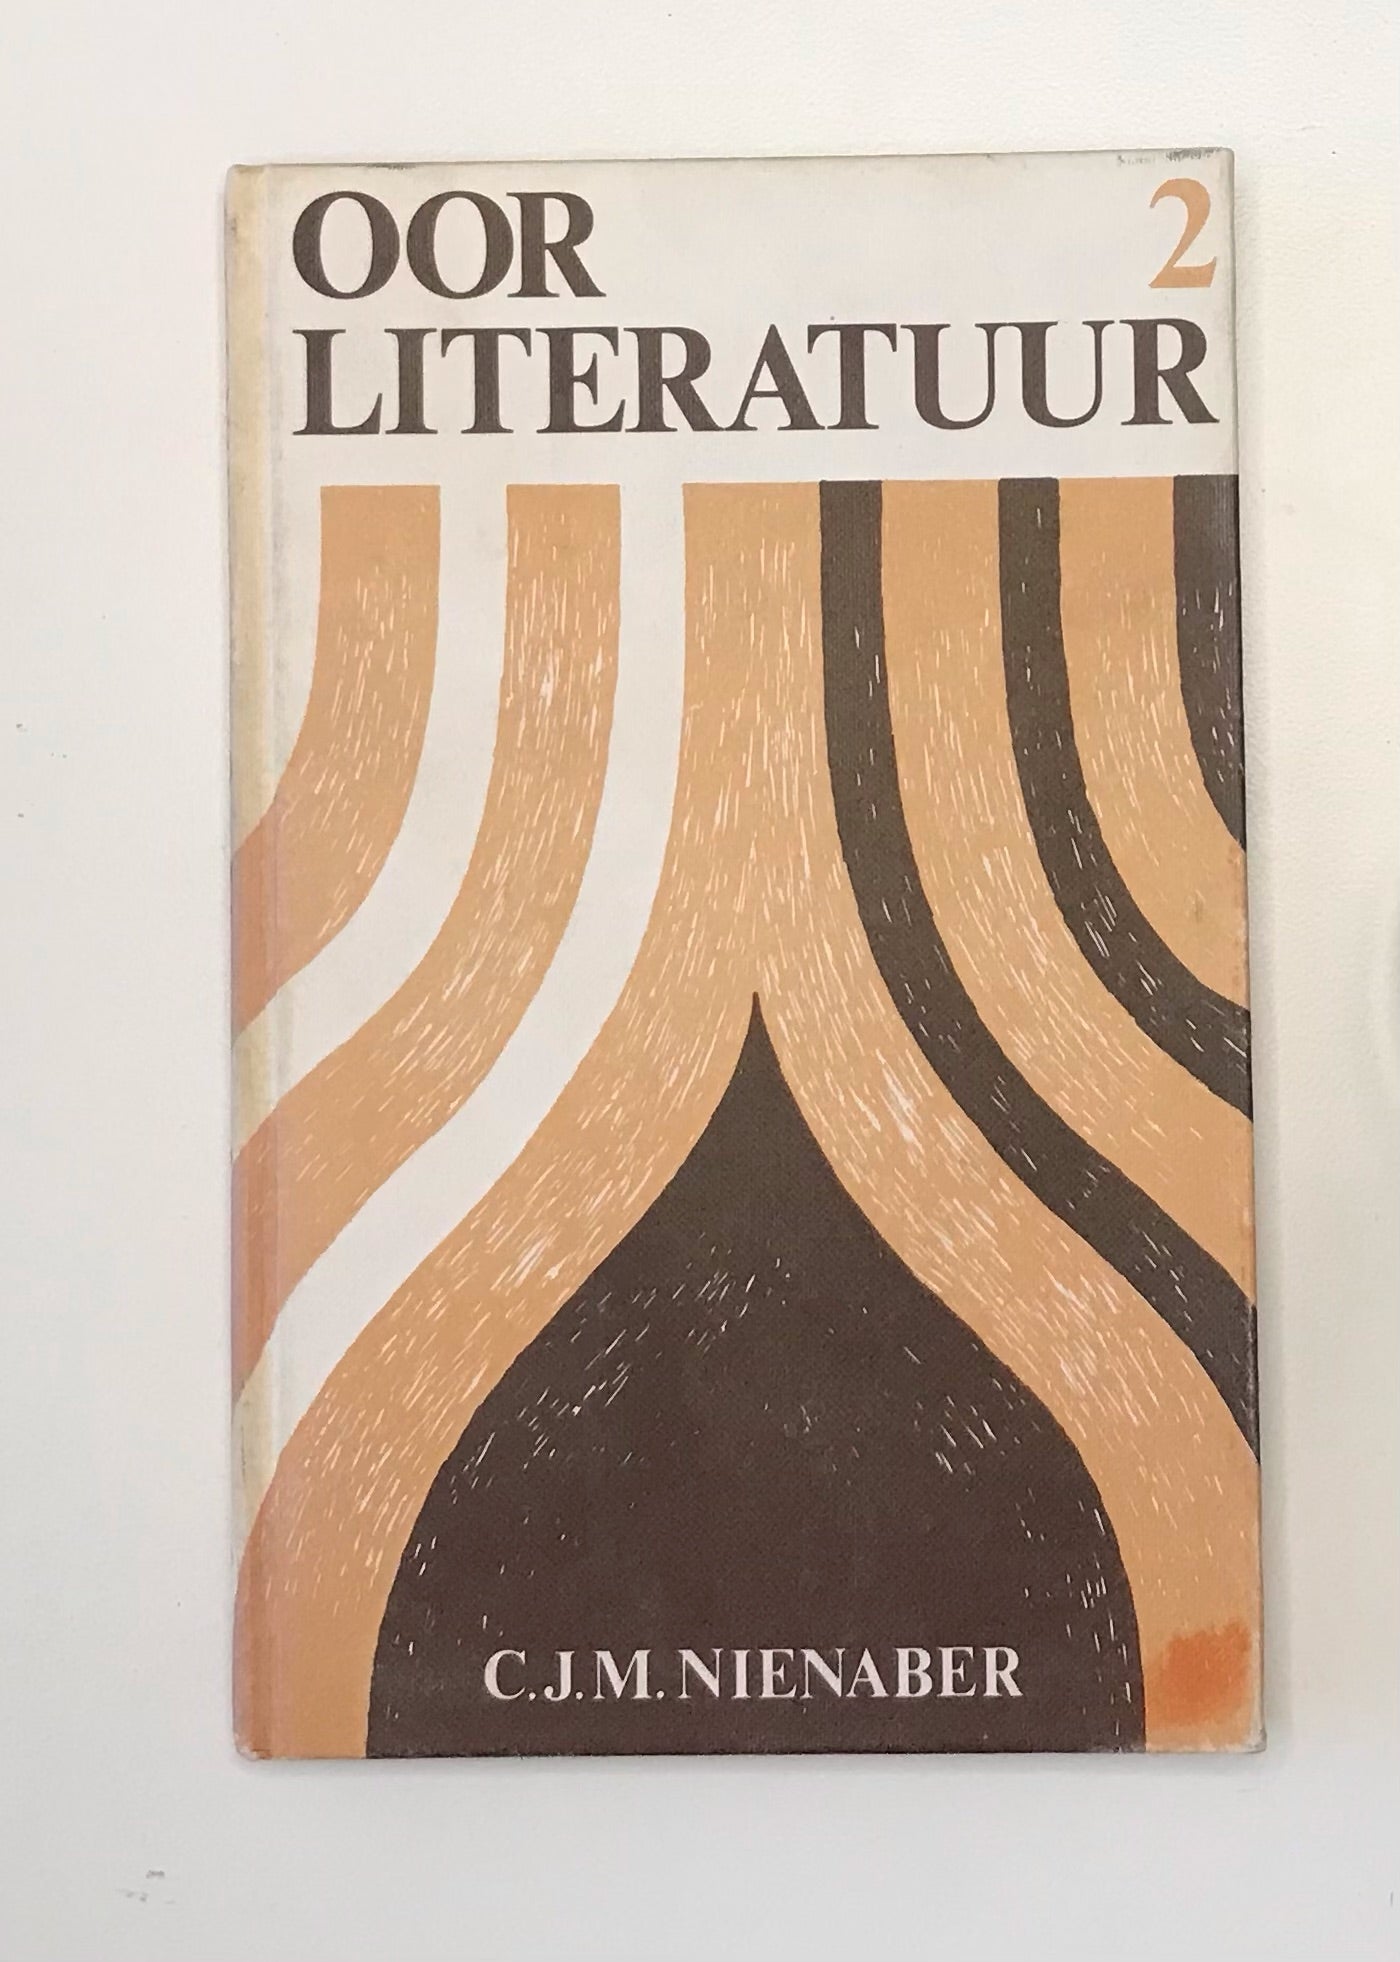 Oor literatuur 2 - C.J.M Nienaber